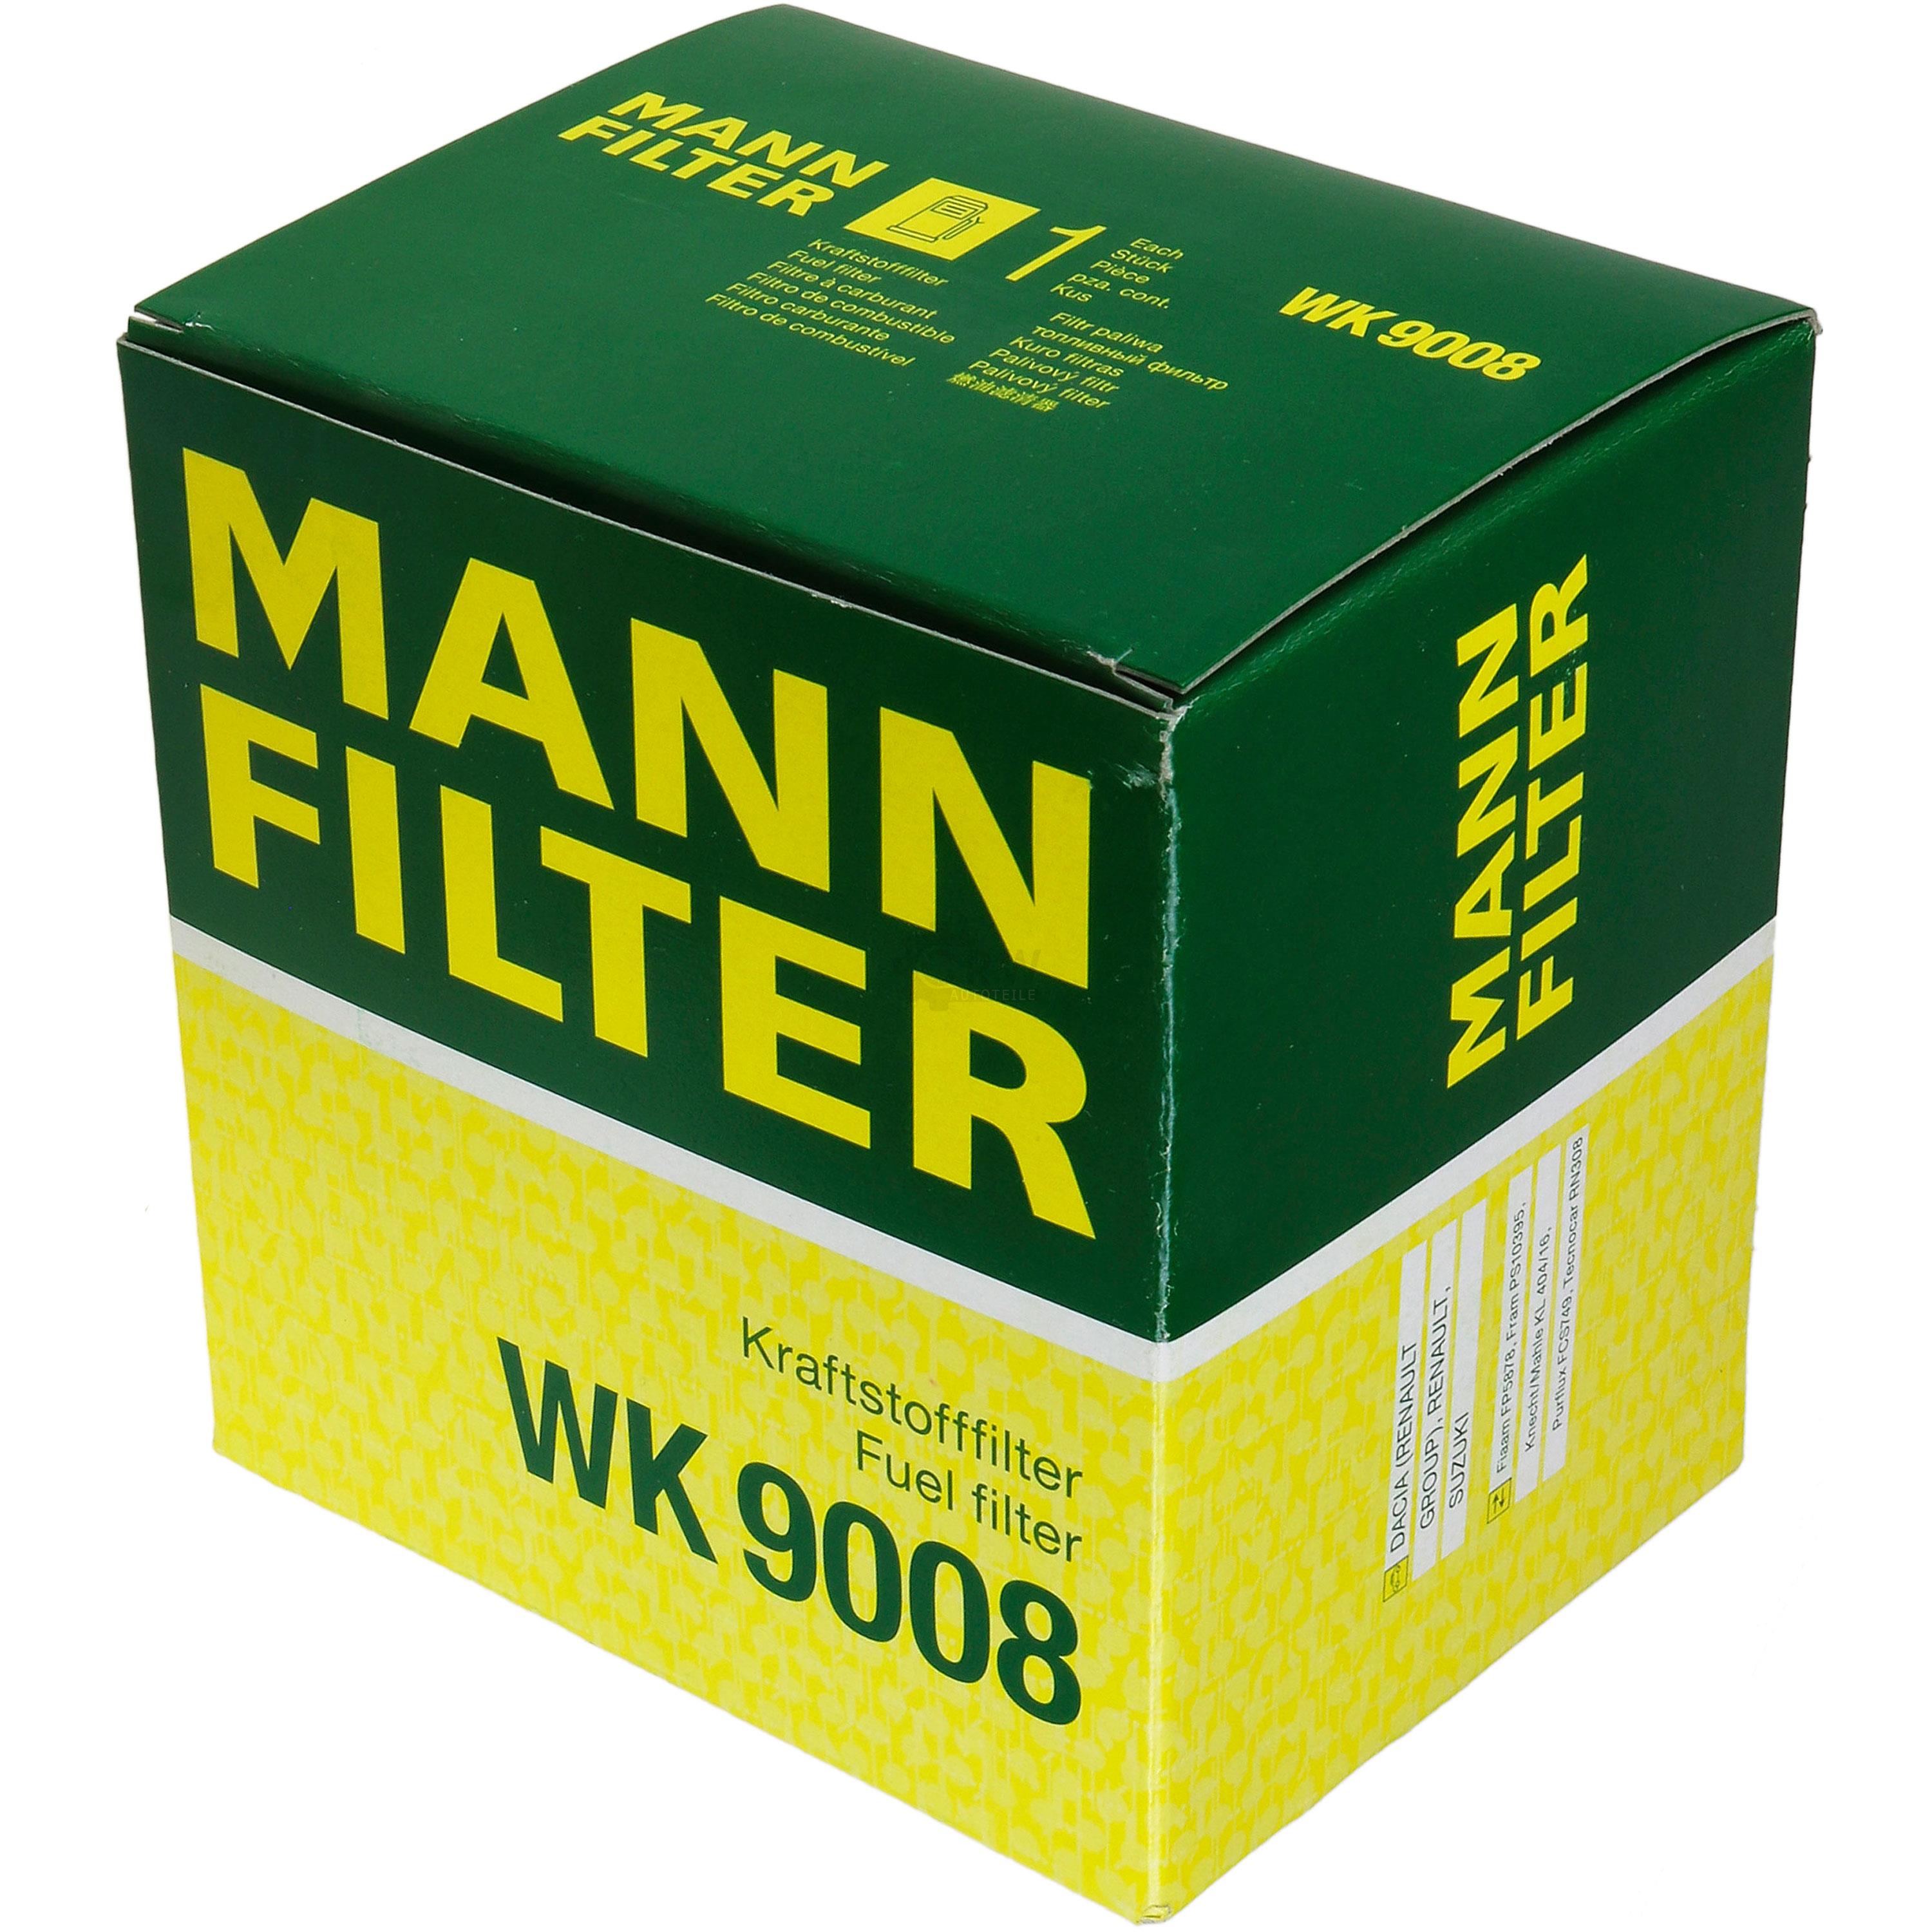 MANN-FILTER Kraftstofffilter WK 9008 Fuel Filter